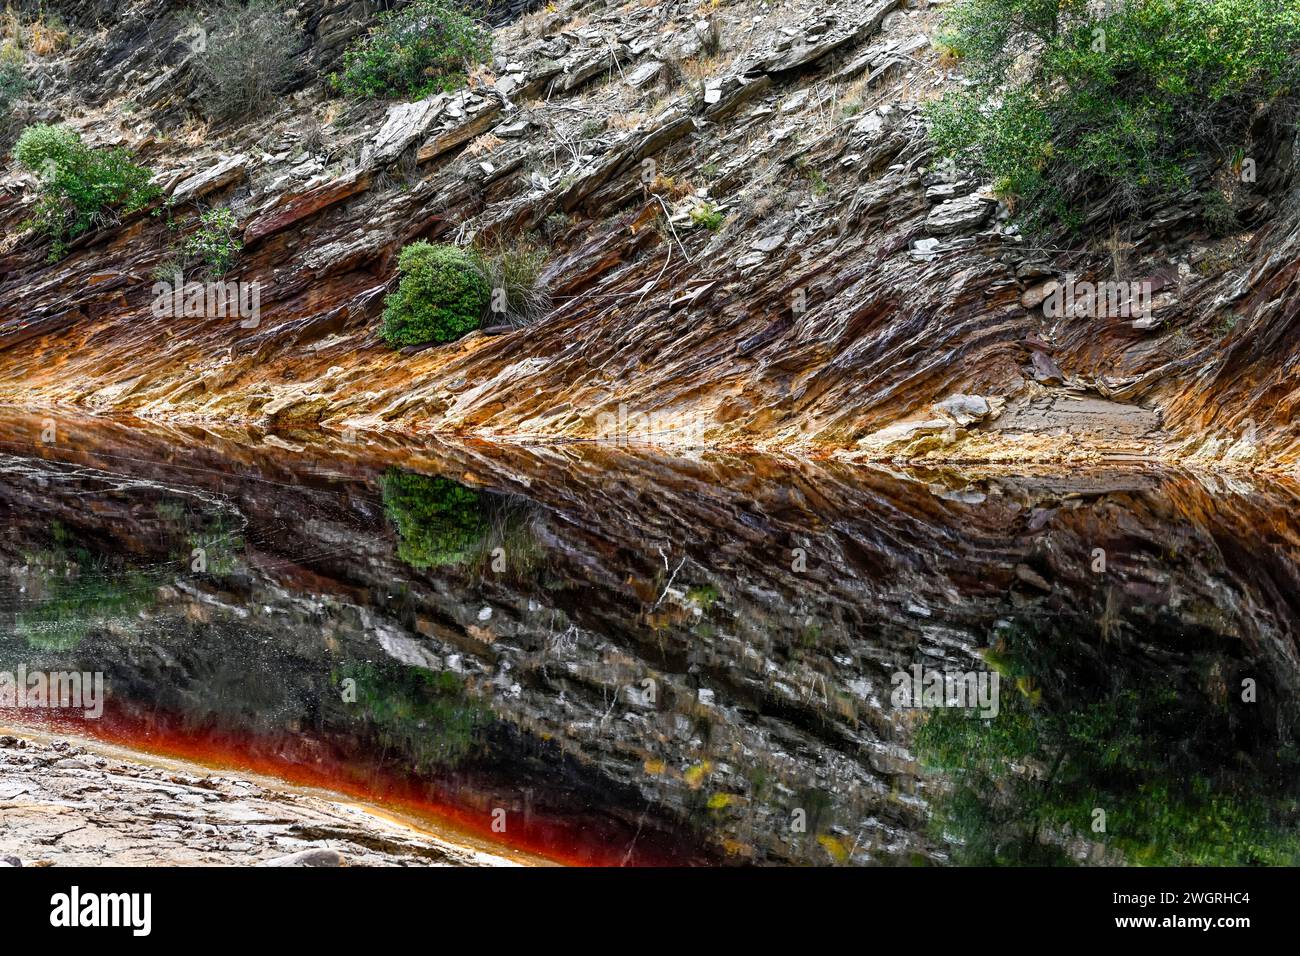 Les eaux riches de couleur rouille de Rio Tinto reflètent le paysage verdoyant des rives dans un cadre serein Banque D'Images